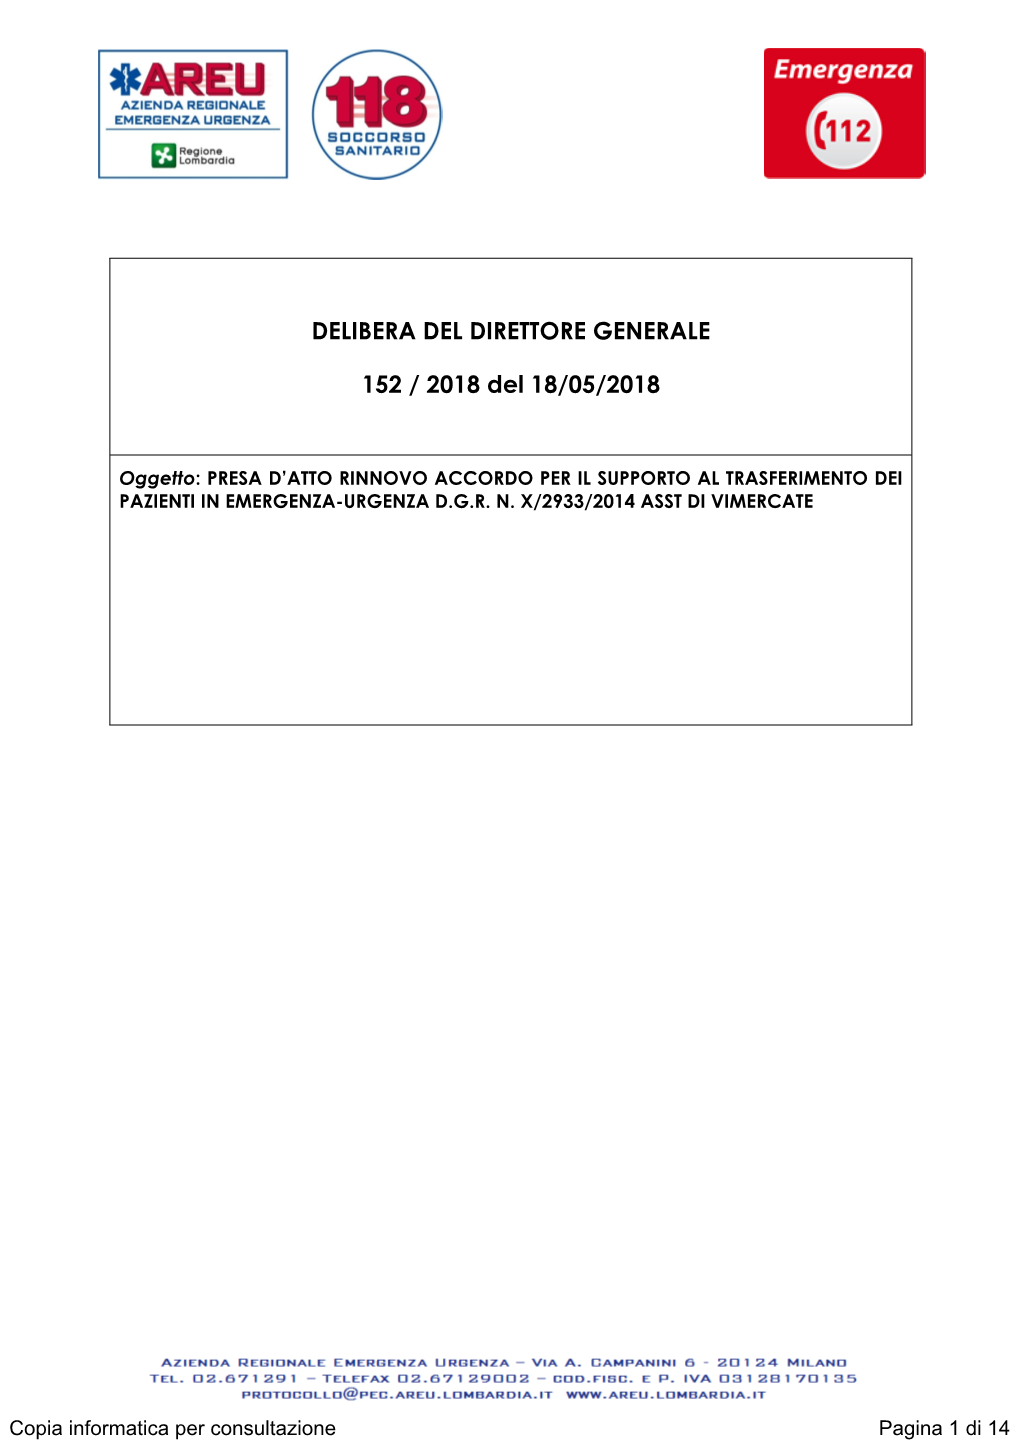 DELIBERA DEL DIRETTORE GENERALE 152 / 2018 Del 18/05